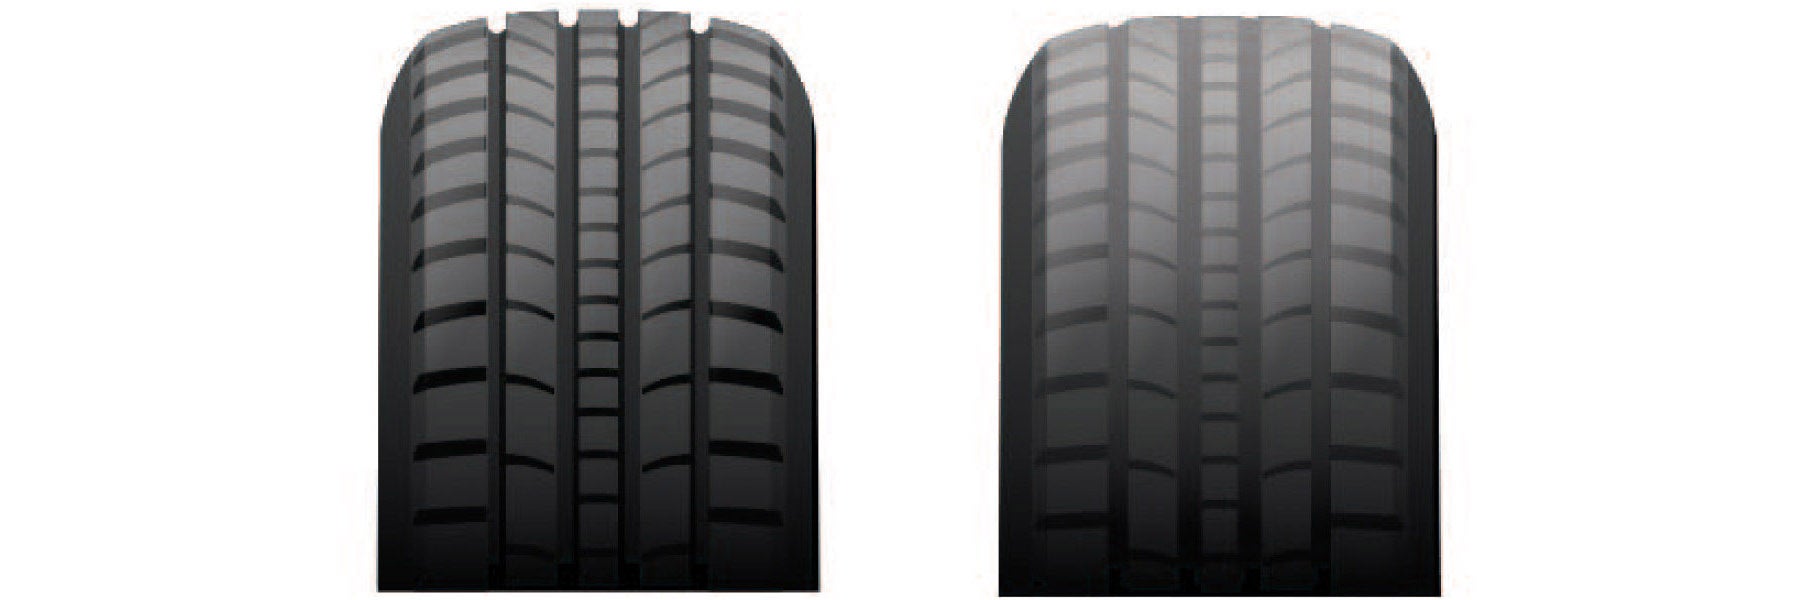 Tire tread depth comparison at DiFeo Kia in Lakewood NJ